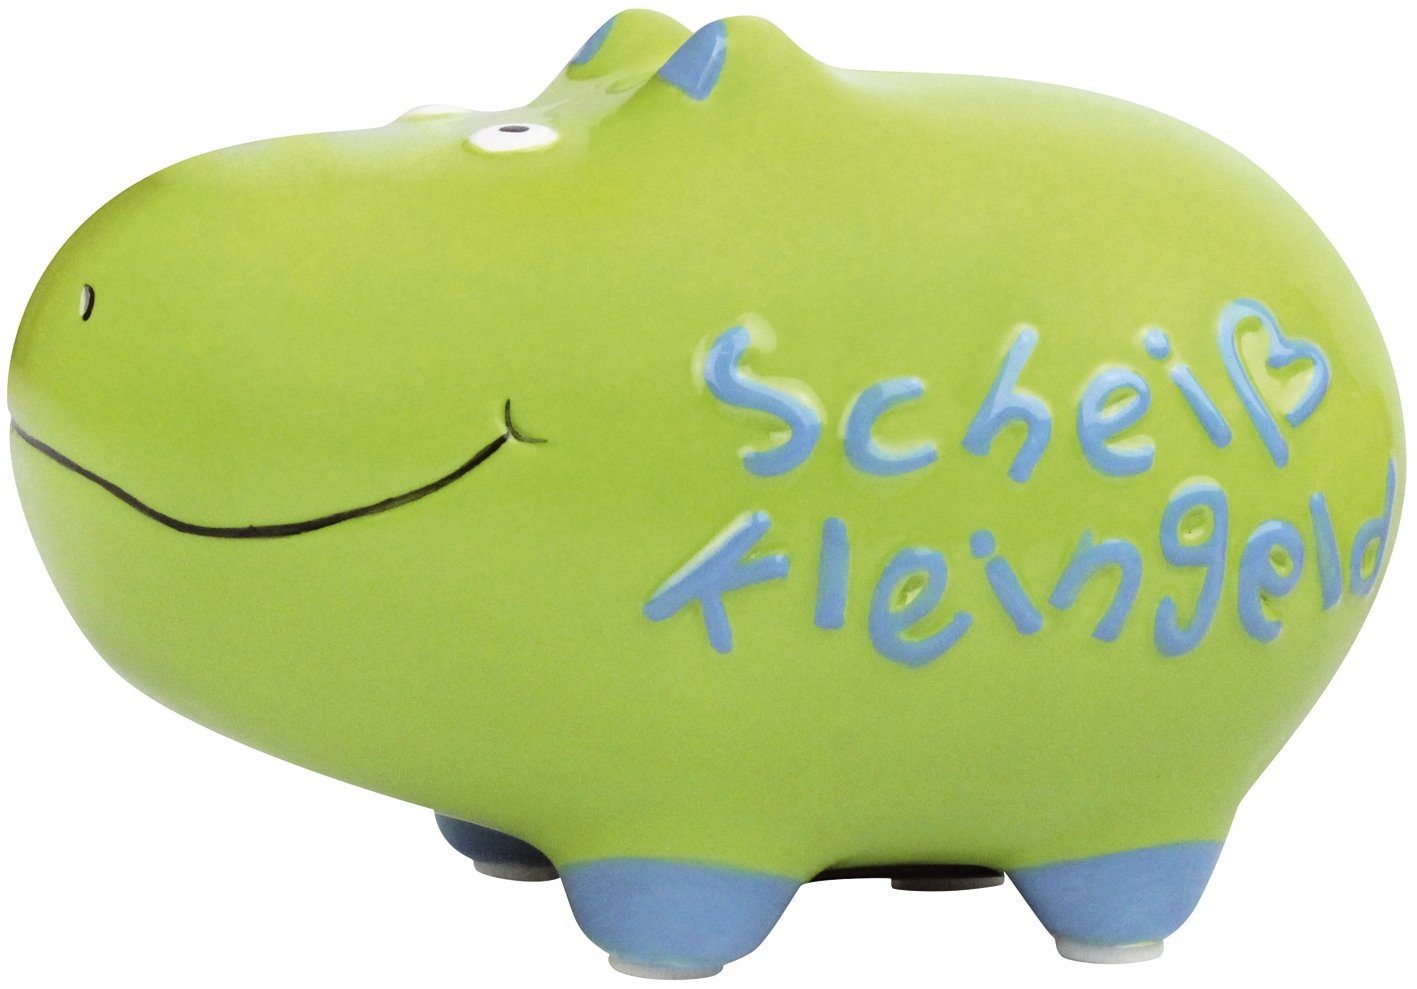 klein "Scheiß 101516 Hippo Kleingeld" - KCG KCG Spardose Kugelschreiber Keramik,